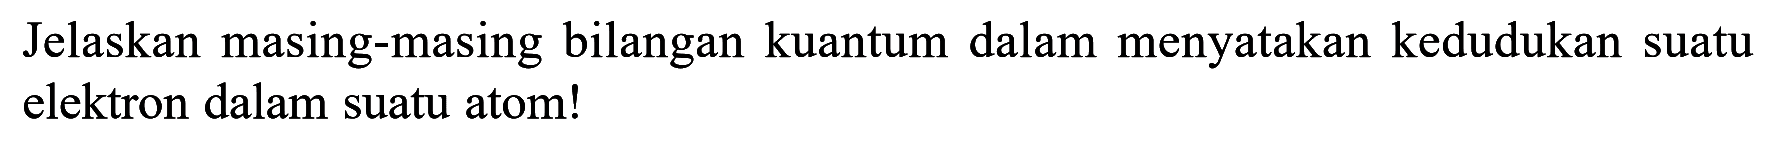 Jelaskan masing-masing bilangan kuantum dalam menyatakan kedudukan suatu elektron dalam suatu atom!